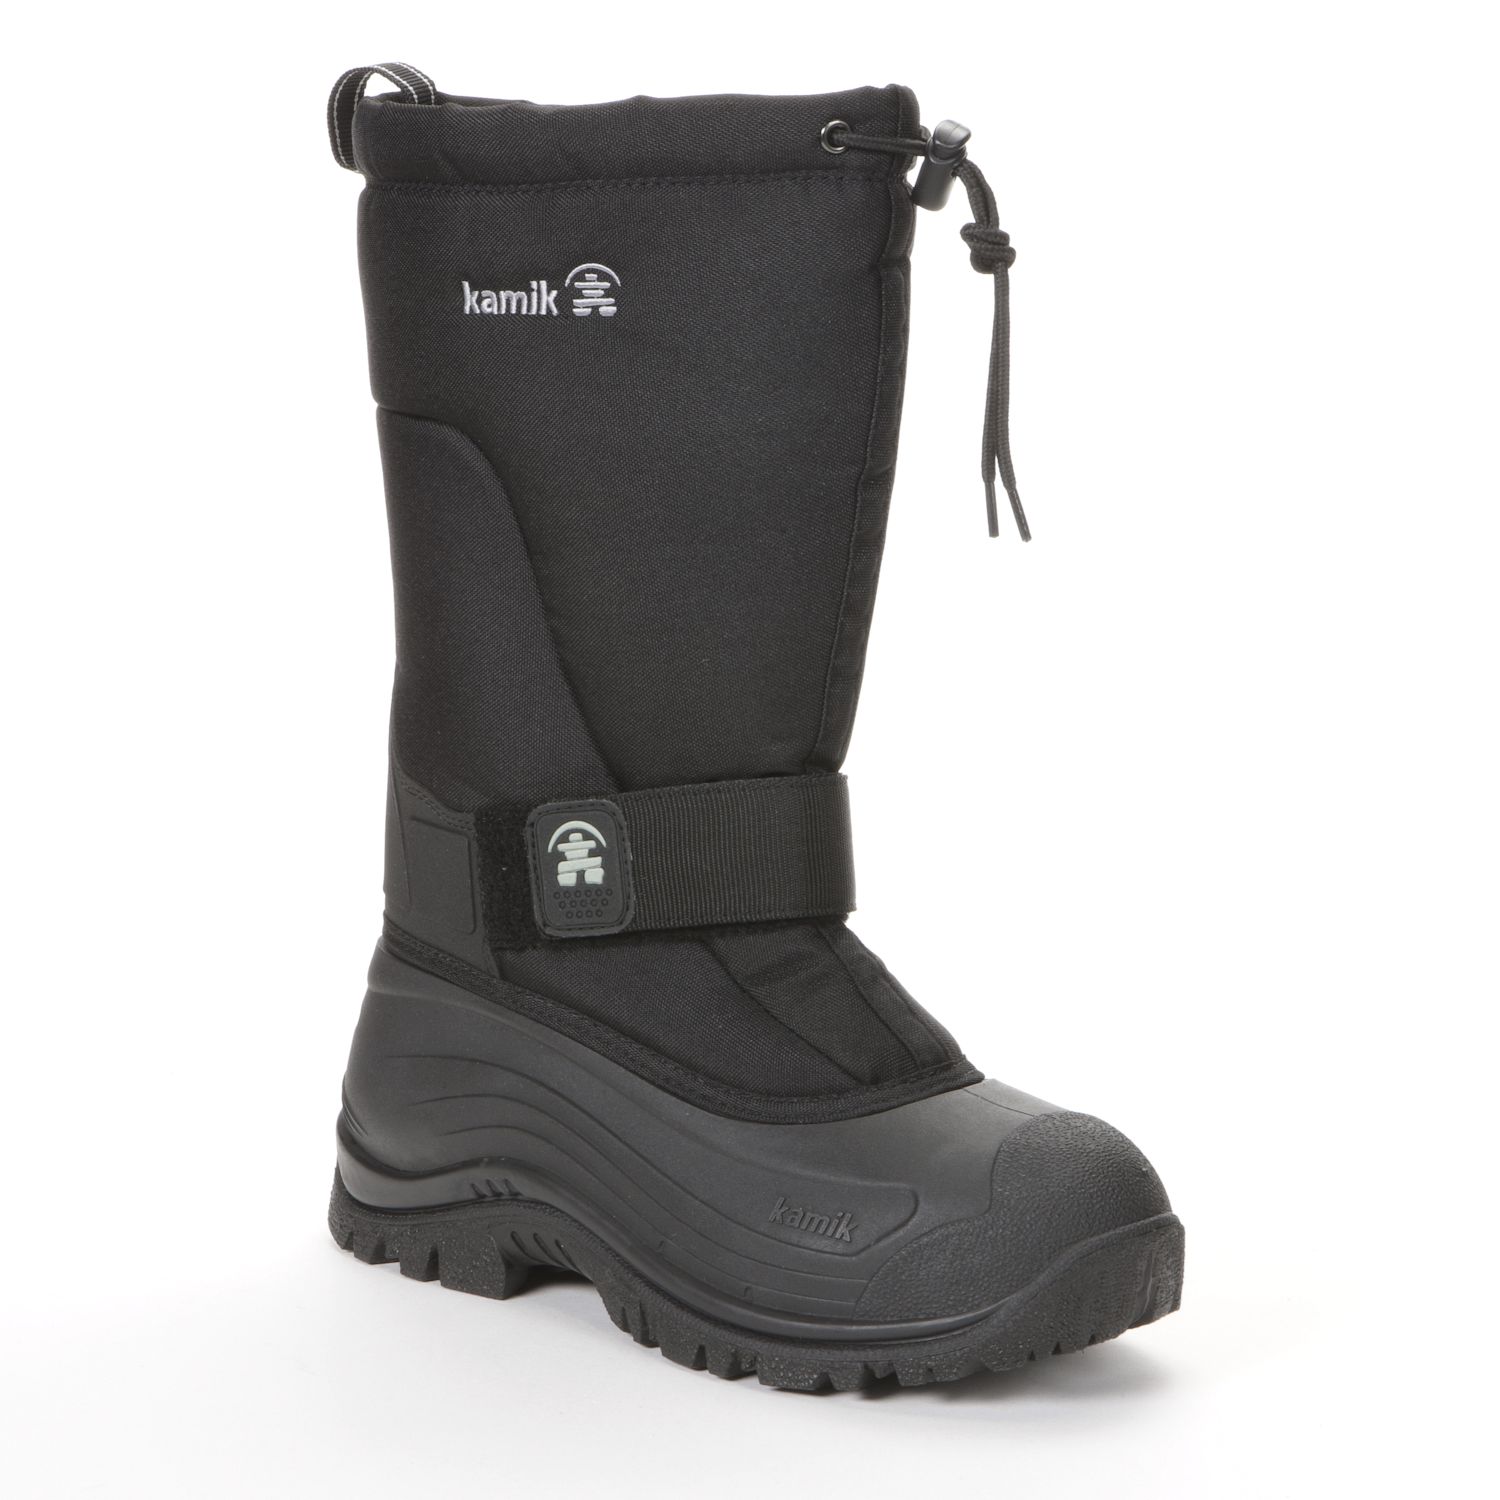 waterproof winter boots on sale